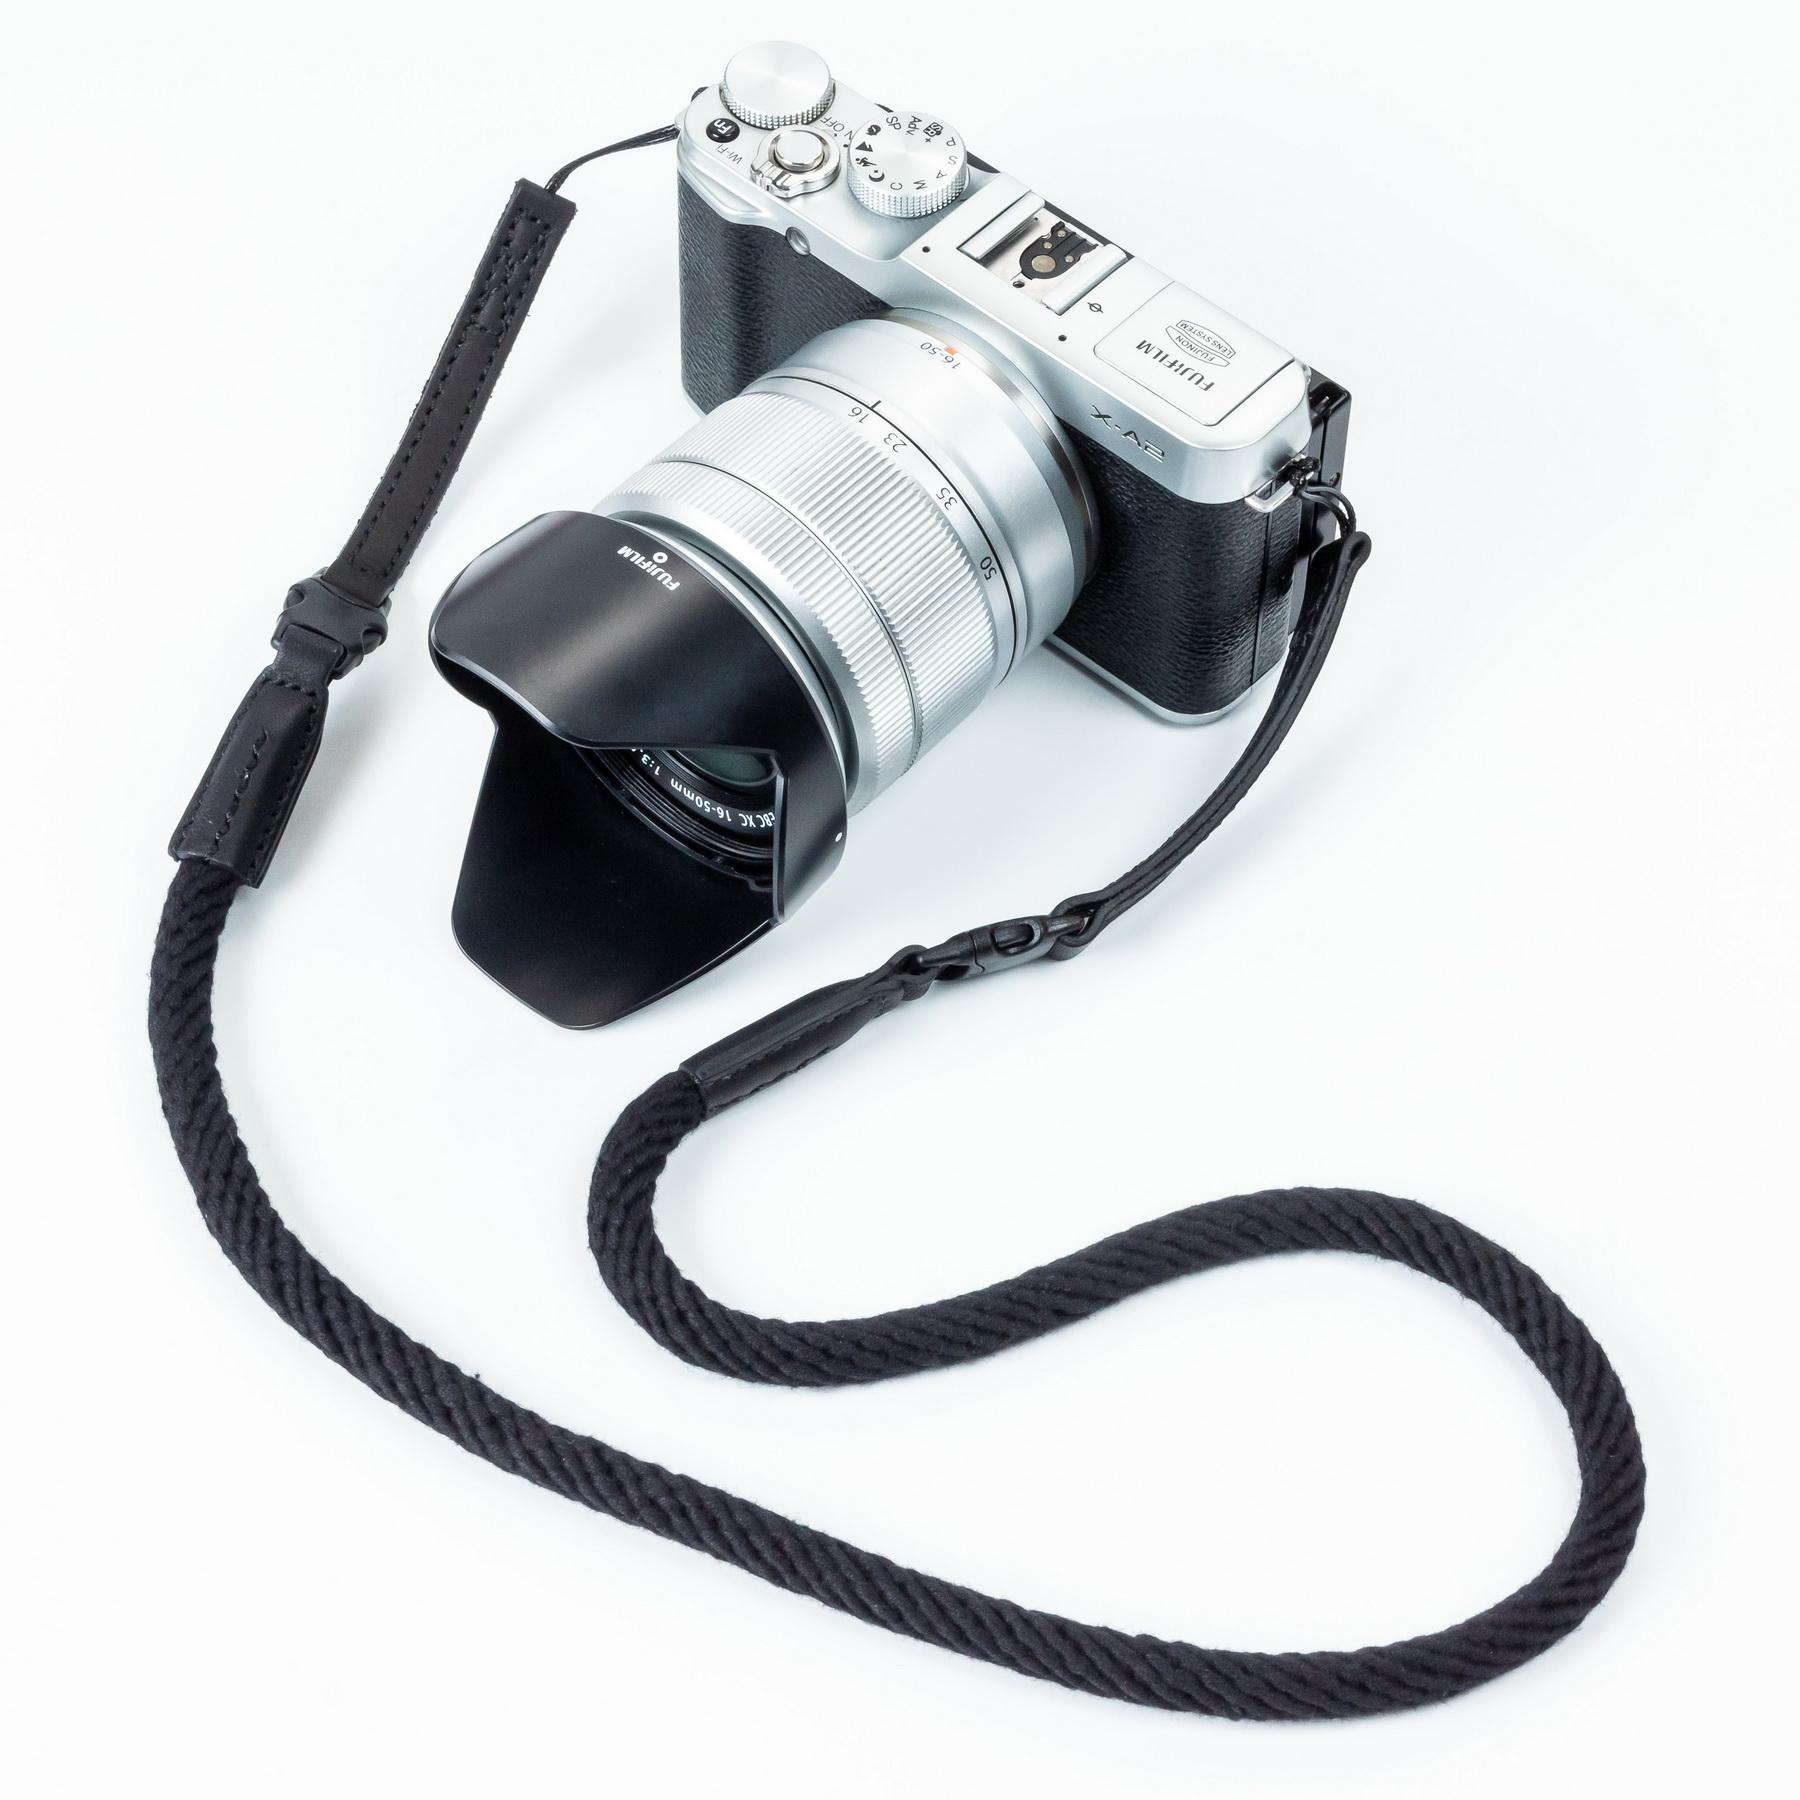 สายคล้องกล้อง Cam-in (สายคล้องกล้องร้อยเชือกผ้าคอตตอน 95cm ความยาวต่ำกว่าหน้าอก) ใช้ได้กับทุกยี่ห้อ ทุกรุ่น